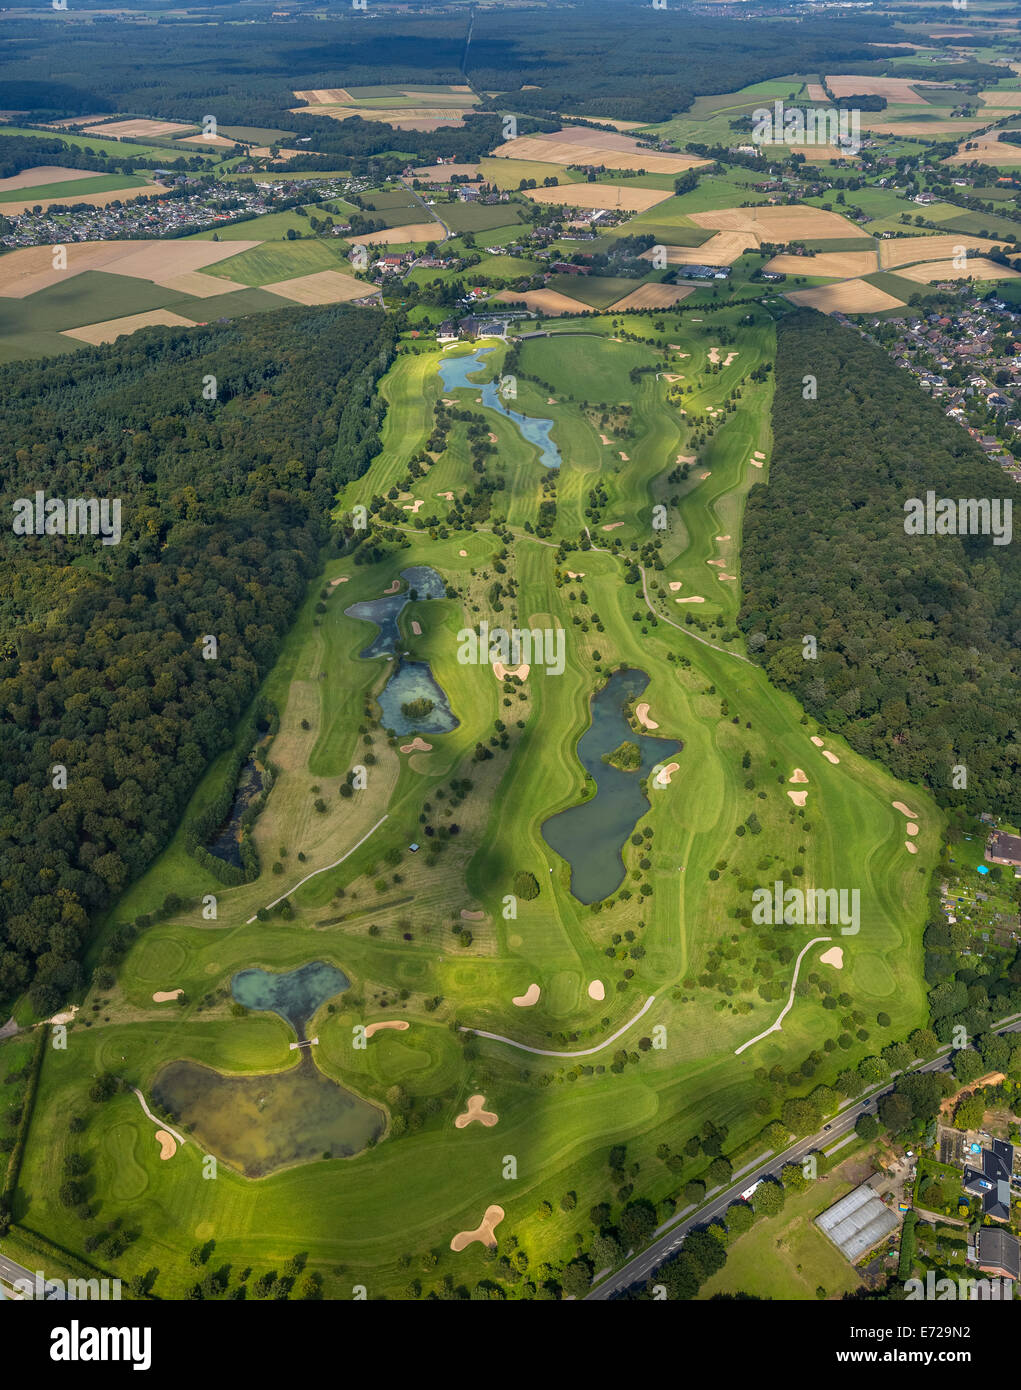 Luftbild, Golfplatz oder Golfclub am Kamp Abbey, Kamp-Lintfort, Nordrhein-Westfalen, Deutschland Stockfoto